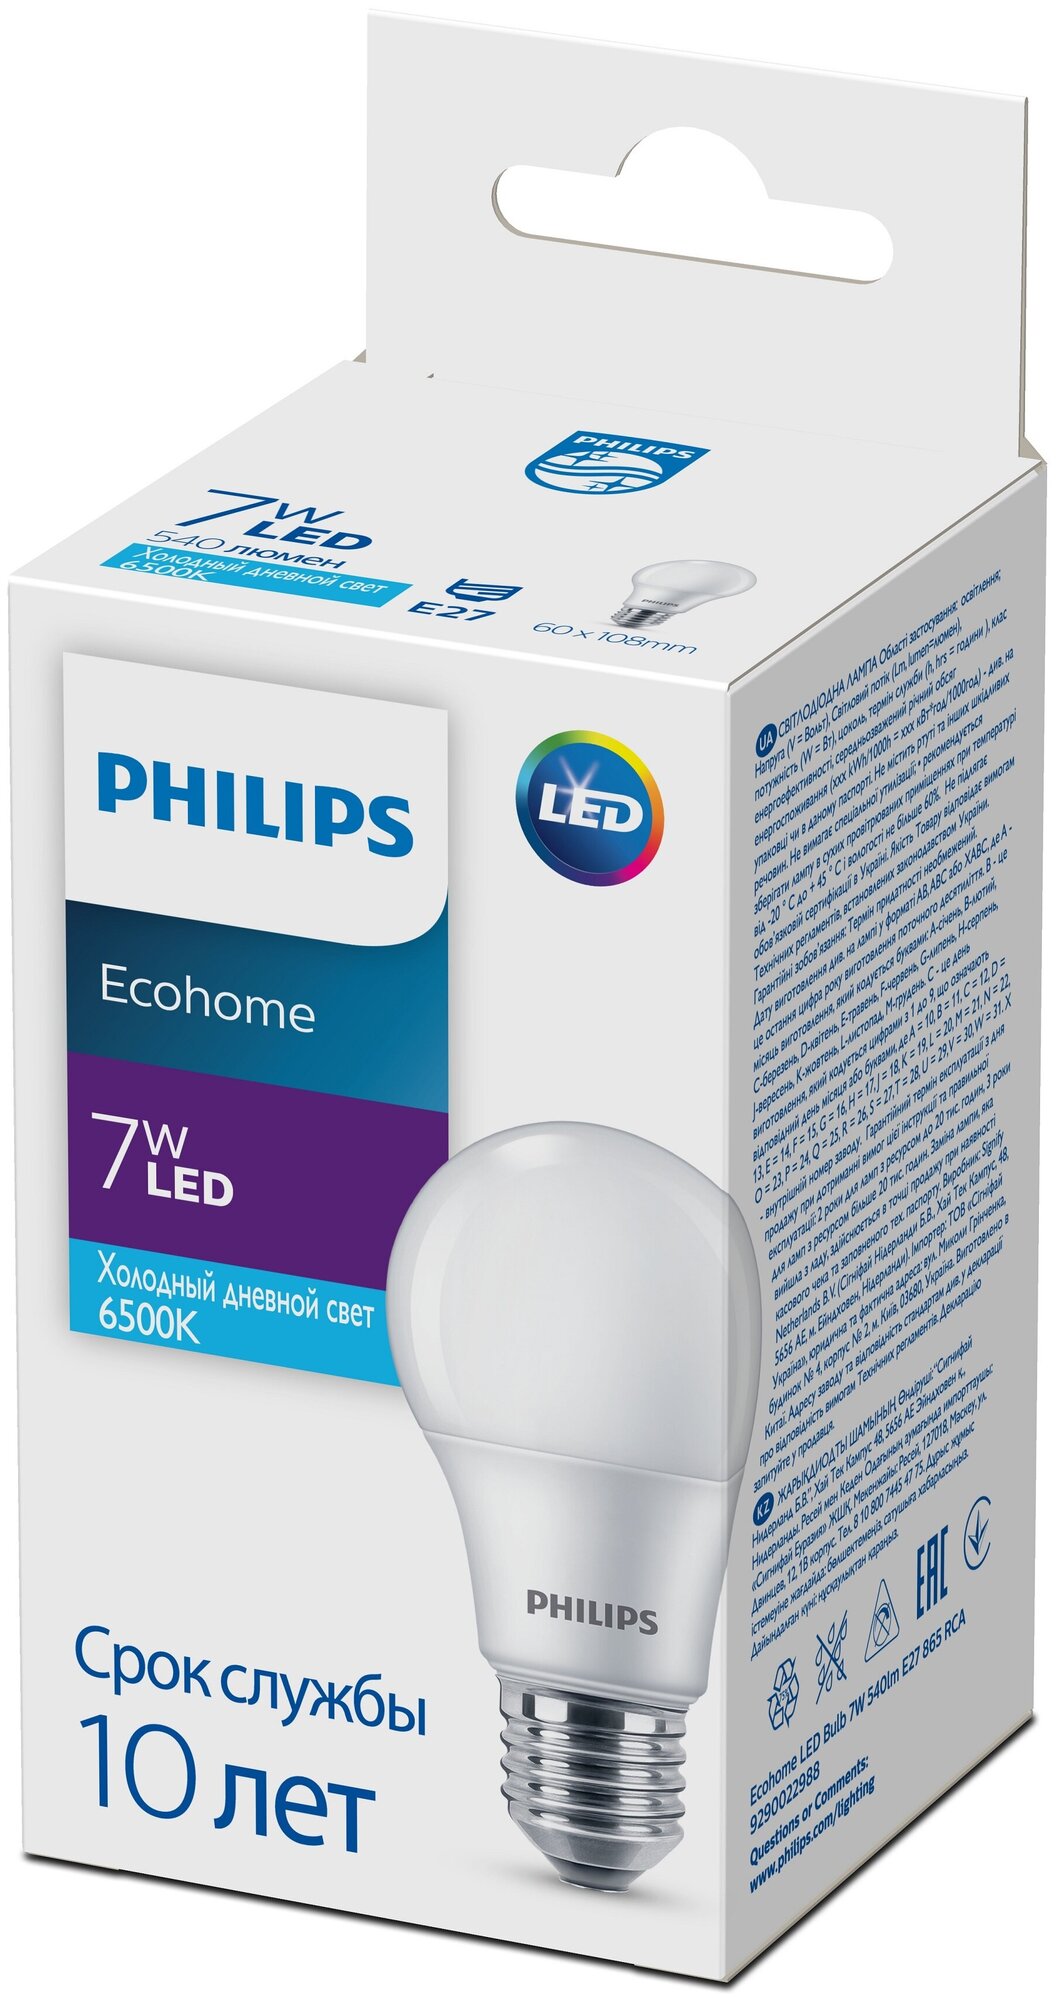 Лампа светодиодная PHILIPS Ecohome LED Bulb 7W E27 6500K